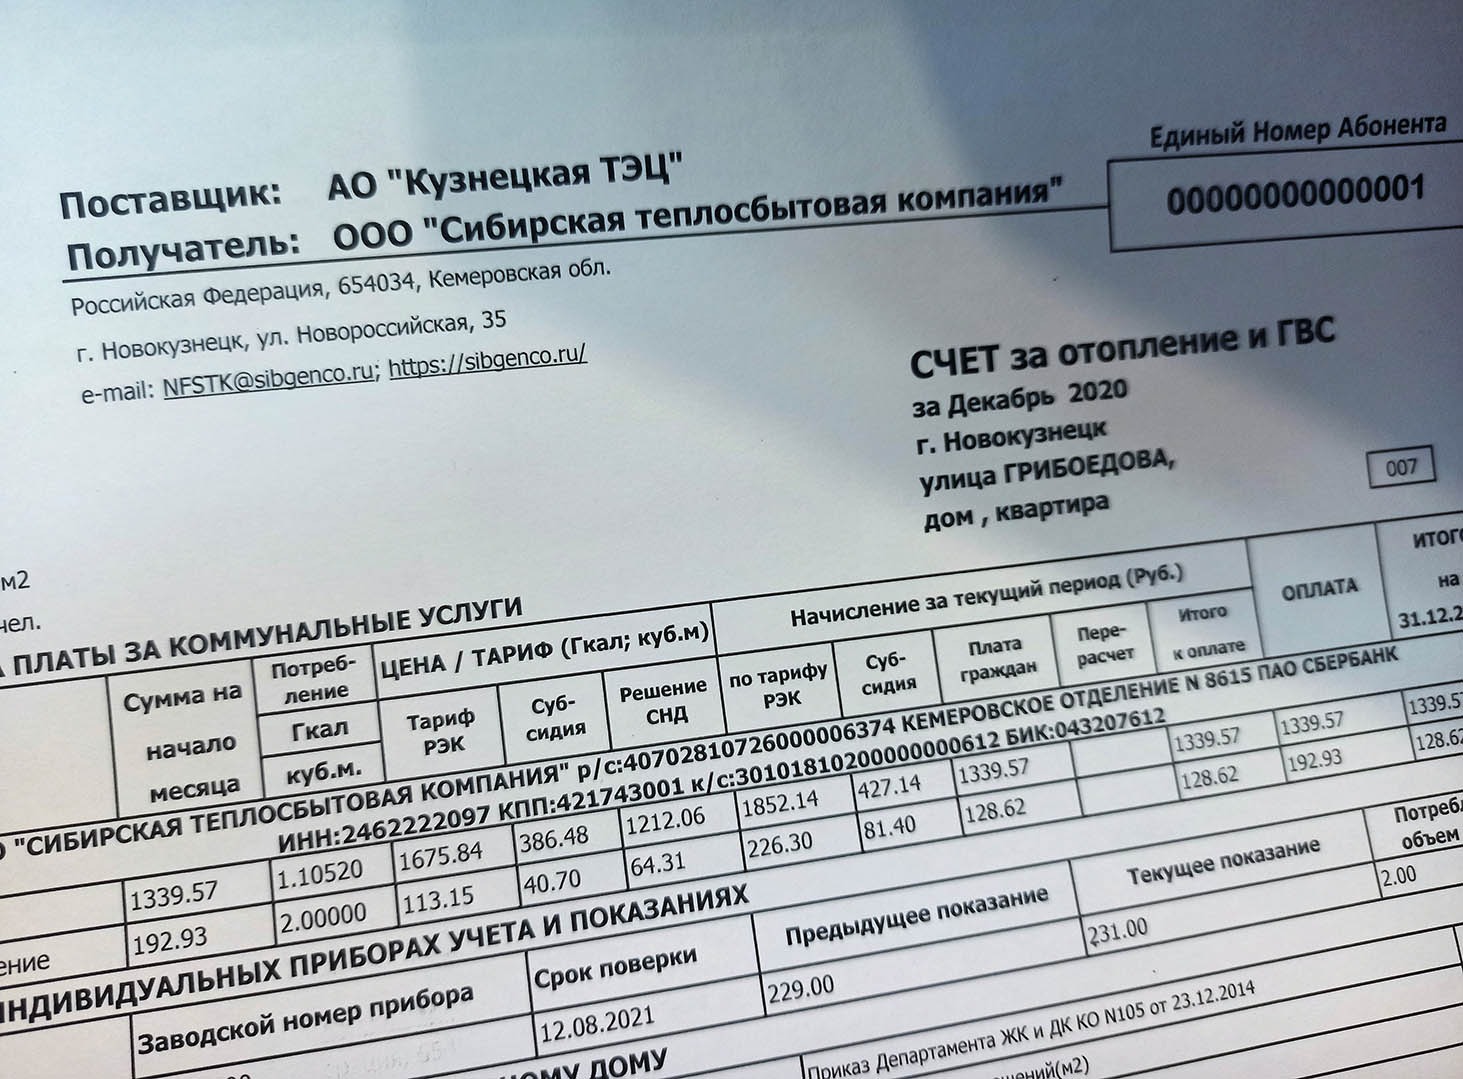 Внимание! С 2021 года в Новокузнецке изменились реквизиты на оплату тепловой энергии от Кузнецкой ТЭЦ СГК